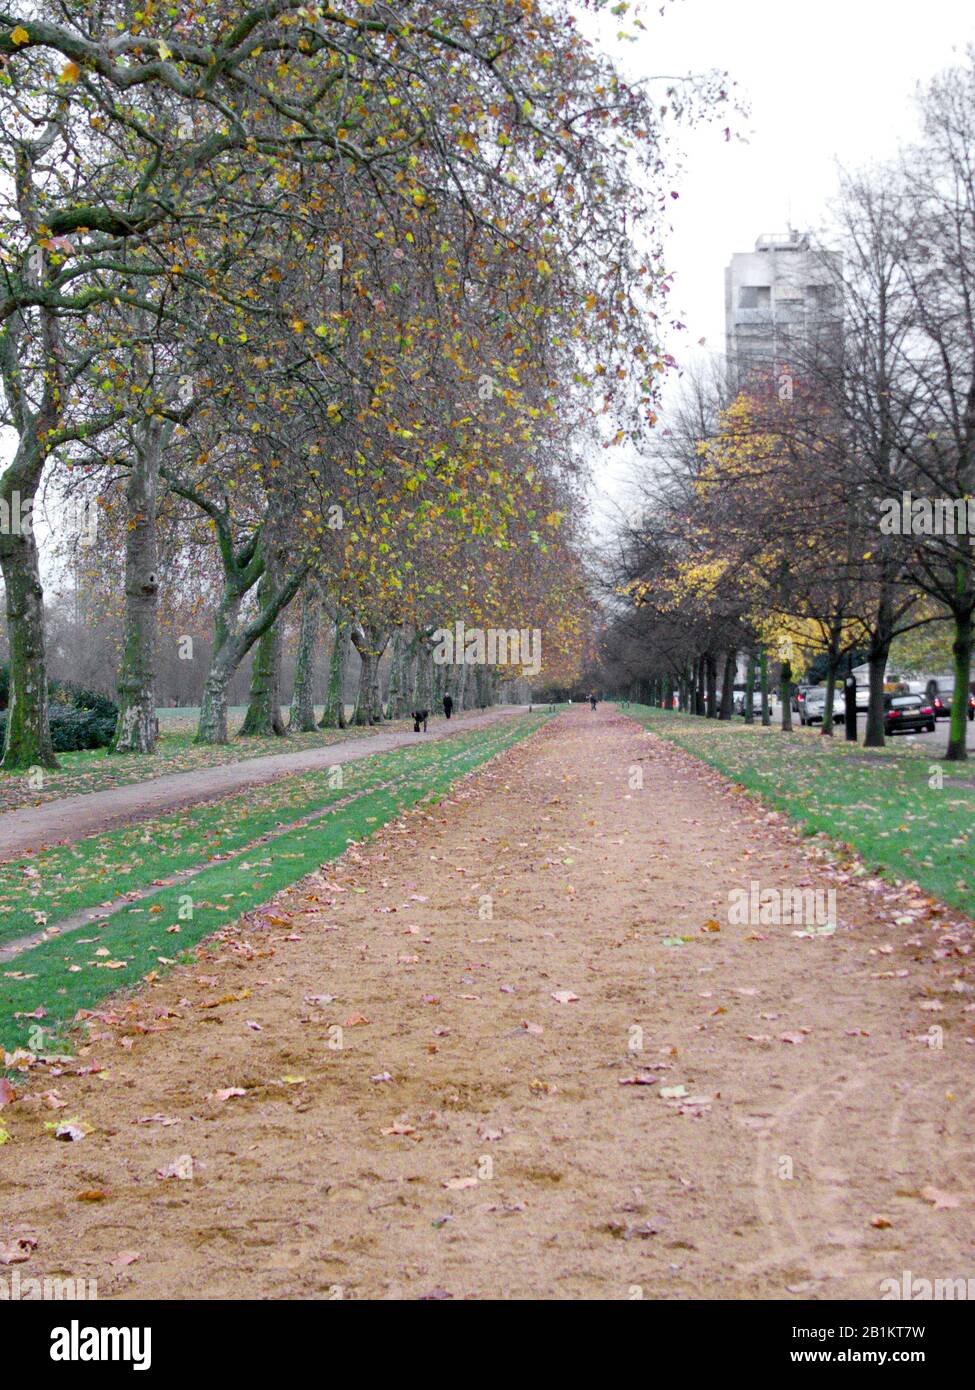 Reitbahn, auf der James Hewitt HRH Princess Diana bei der Pferdefahrt unterrichtete, Hyde Park, London, England. Stockfoto